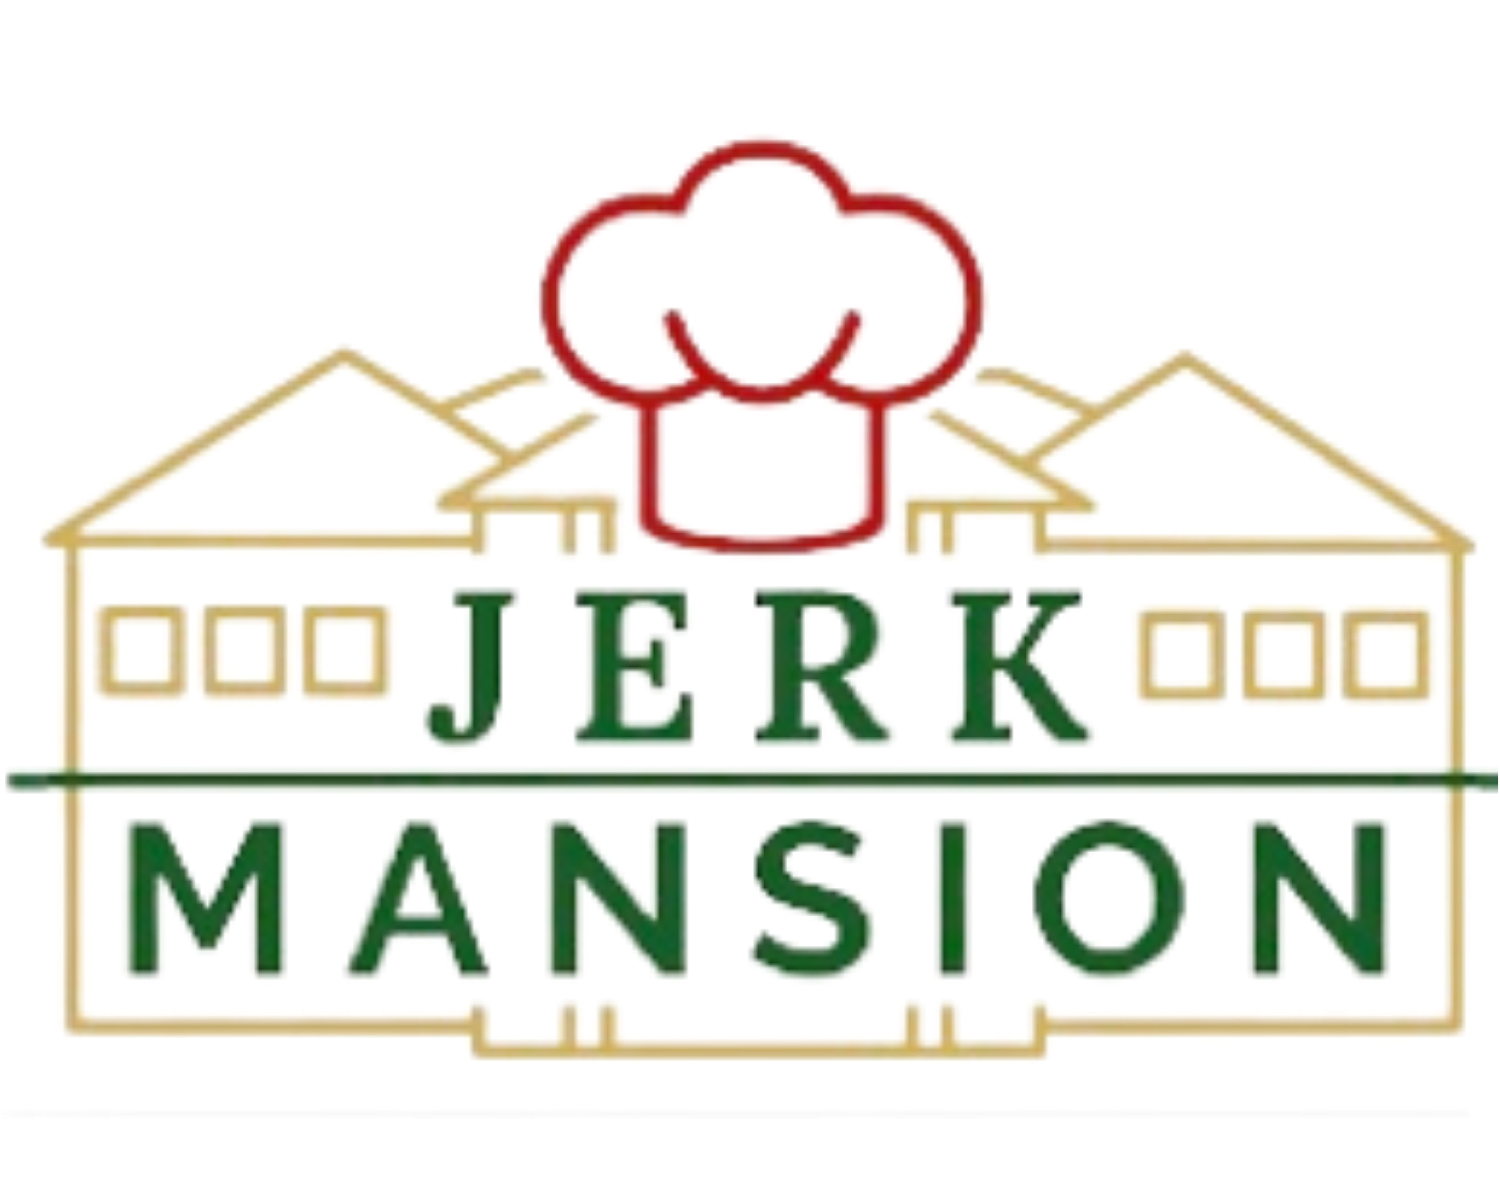 Jerk Mansion